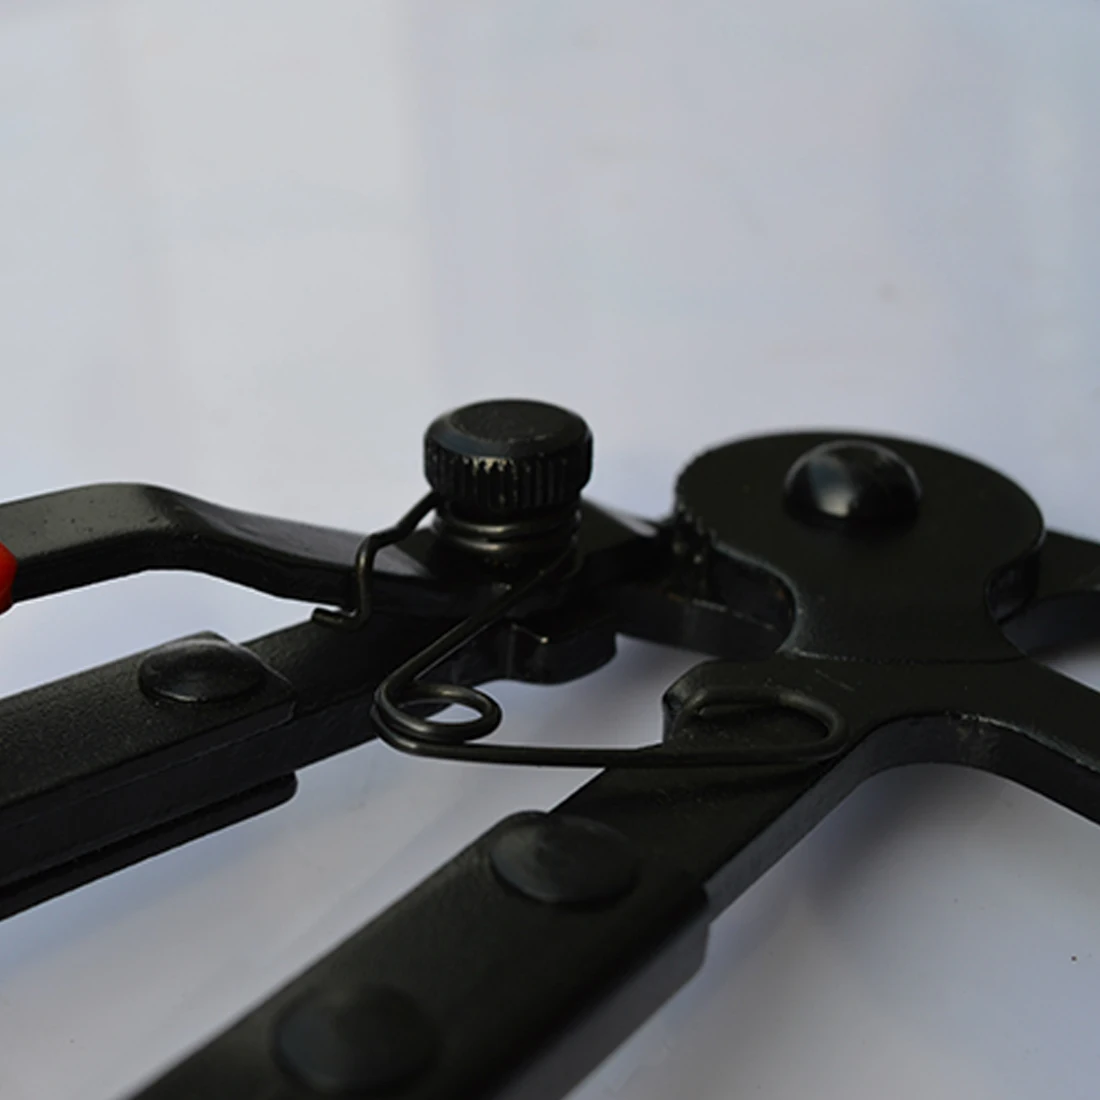 Горячие 1 шт. инструменты для автомобилей тип кабеля гибкий провод длинные досягаемые пласкогубцы для шлангов для ремонта автомобилей шланг зажим инструмент для удаления